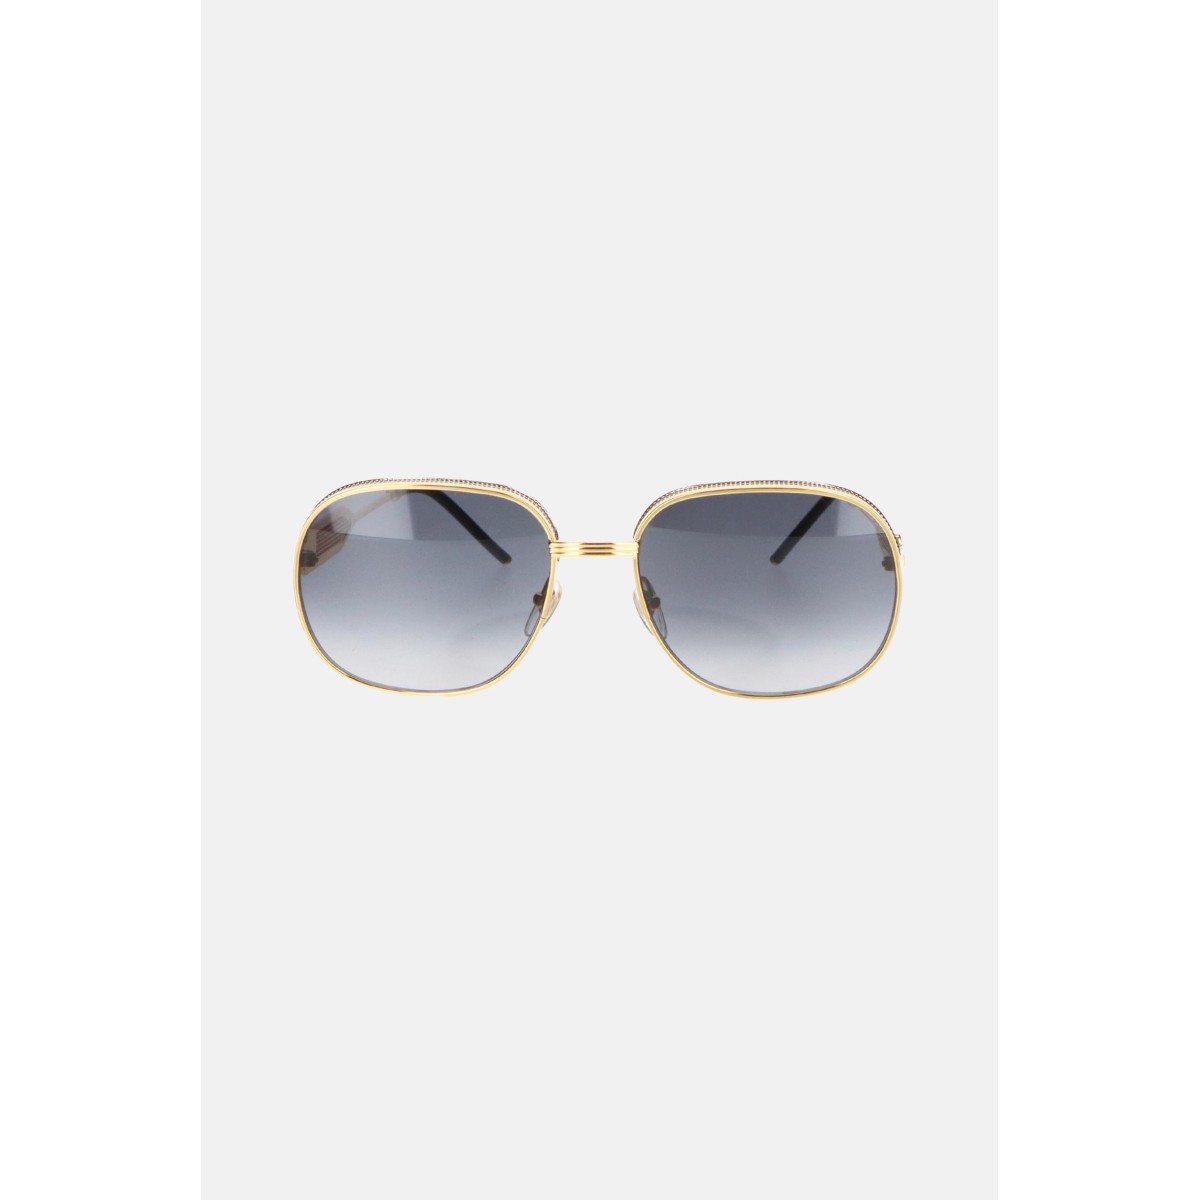 Casablanca sunglasses